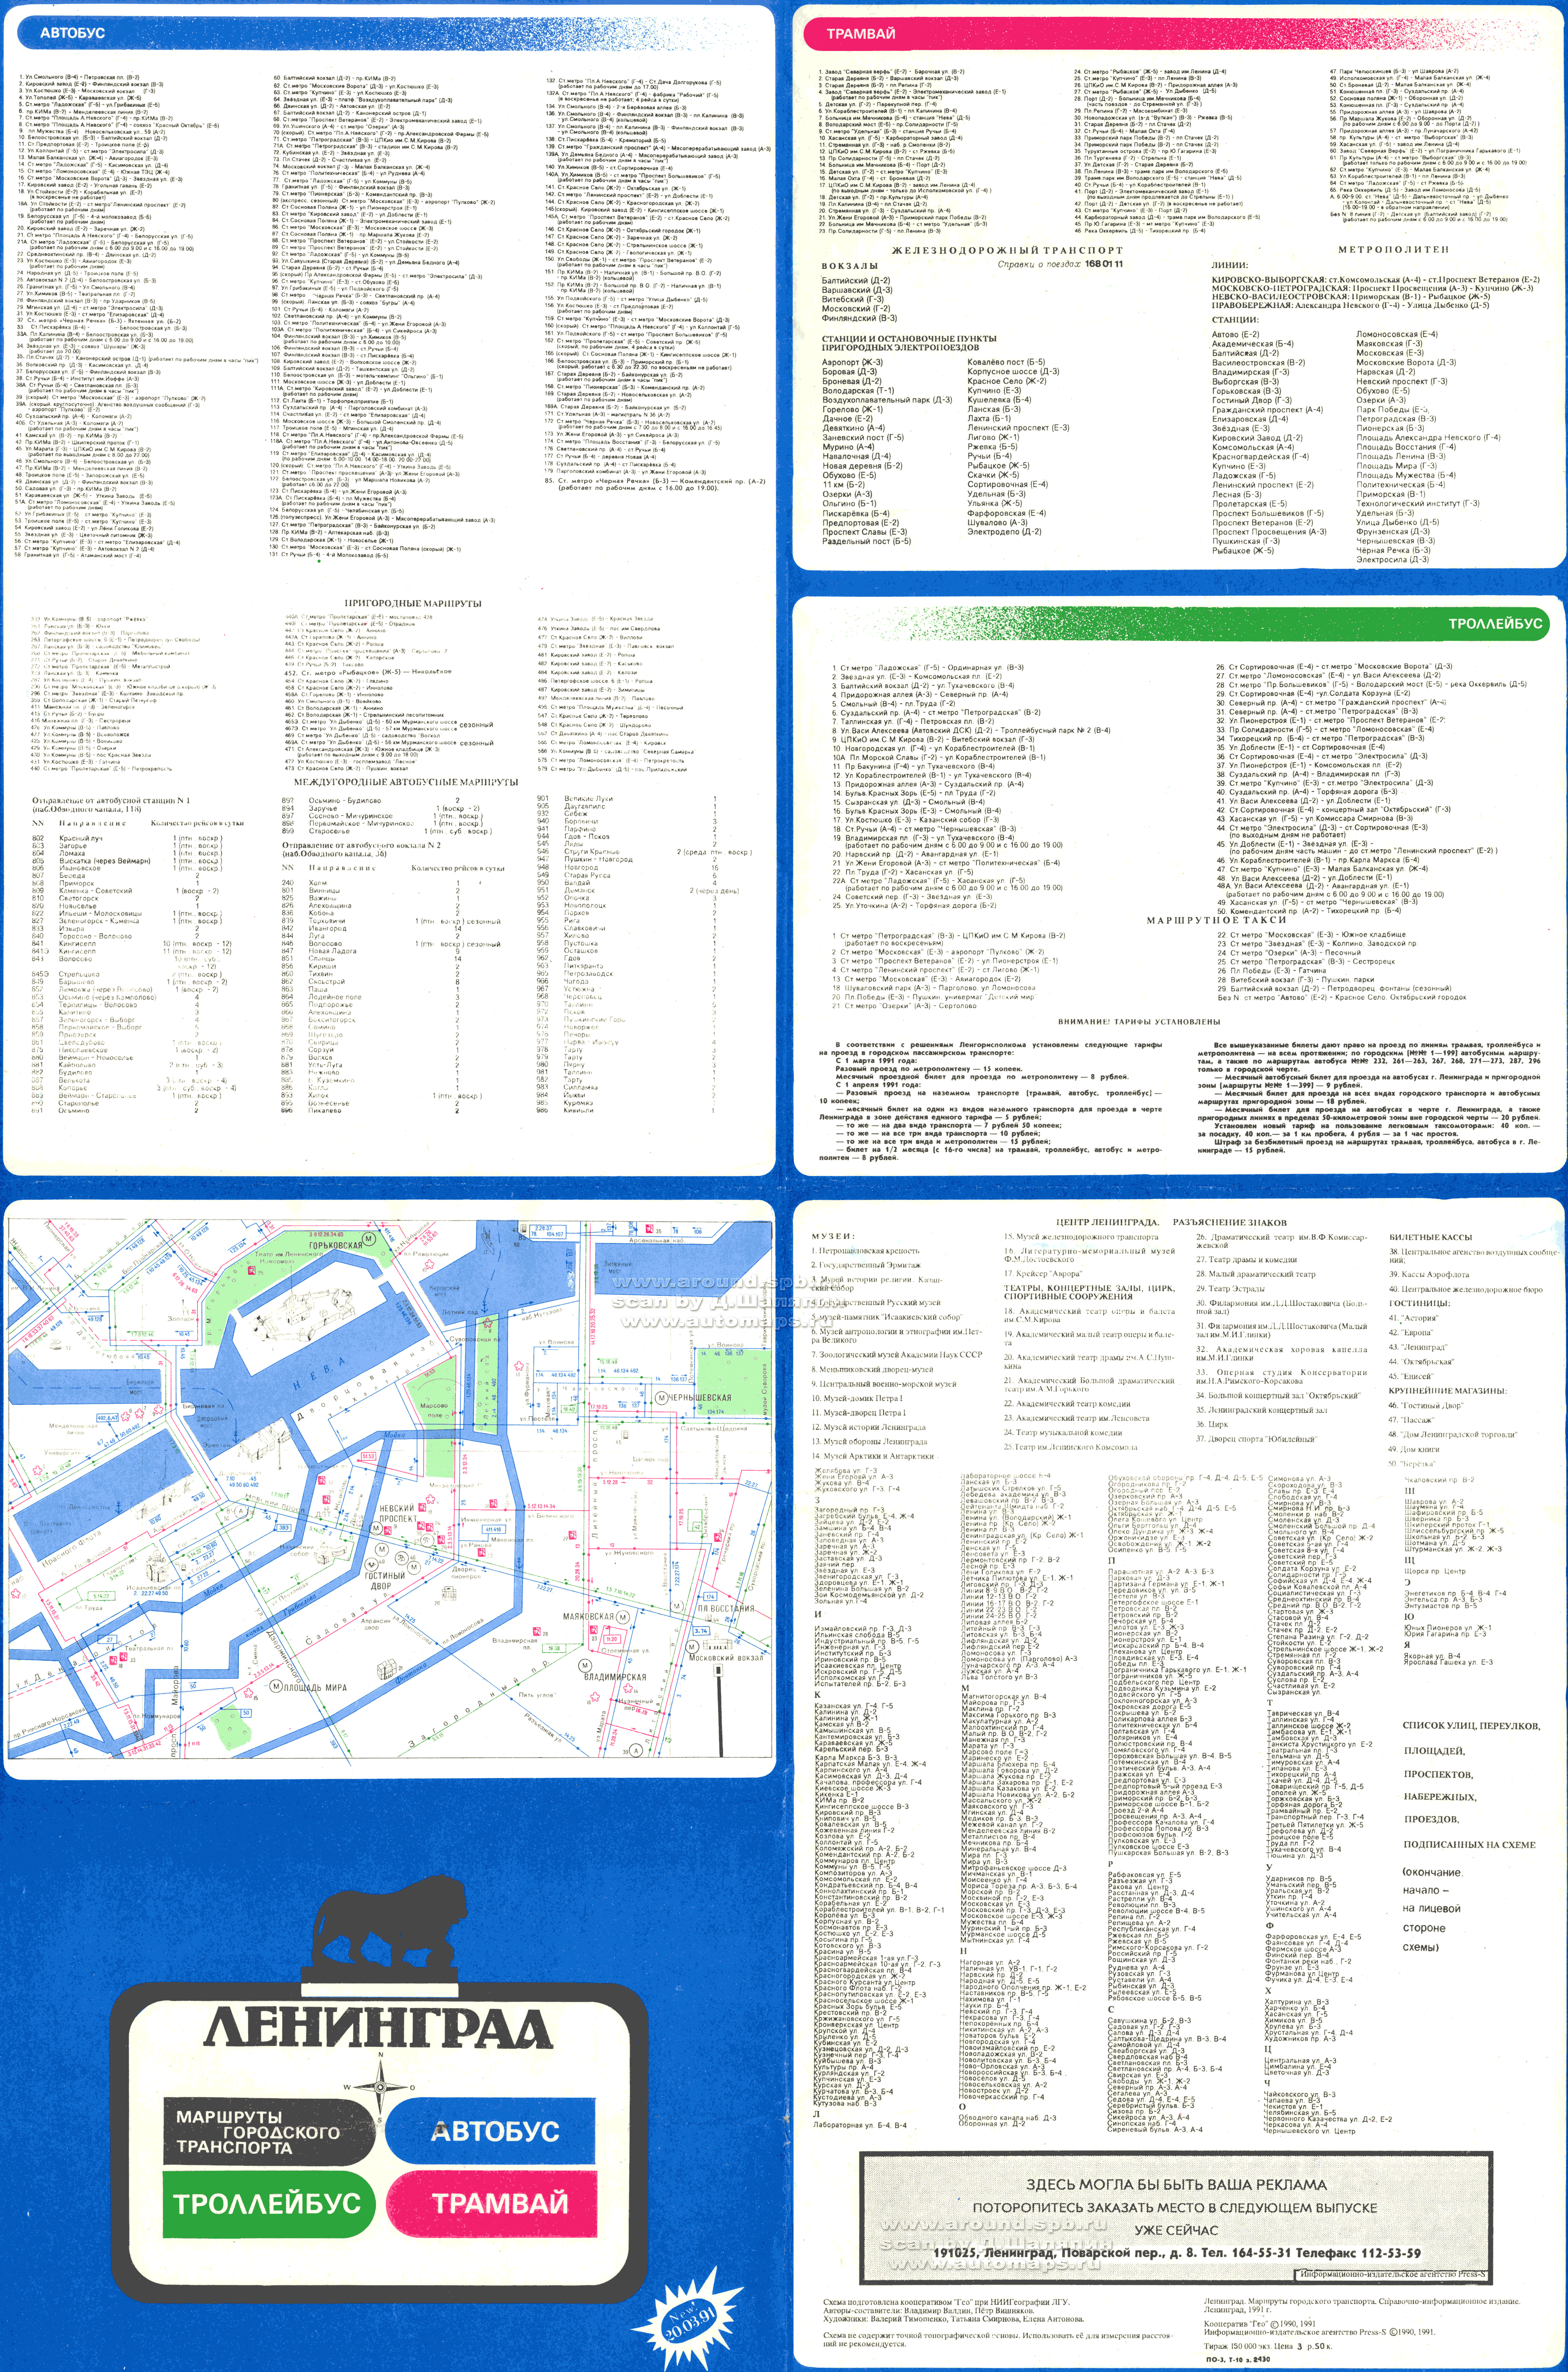 Sankt Petersburg — Systemwide Maps